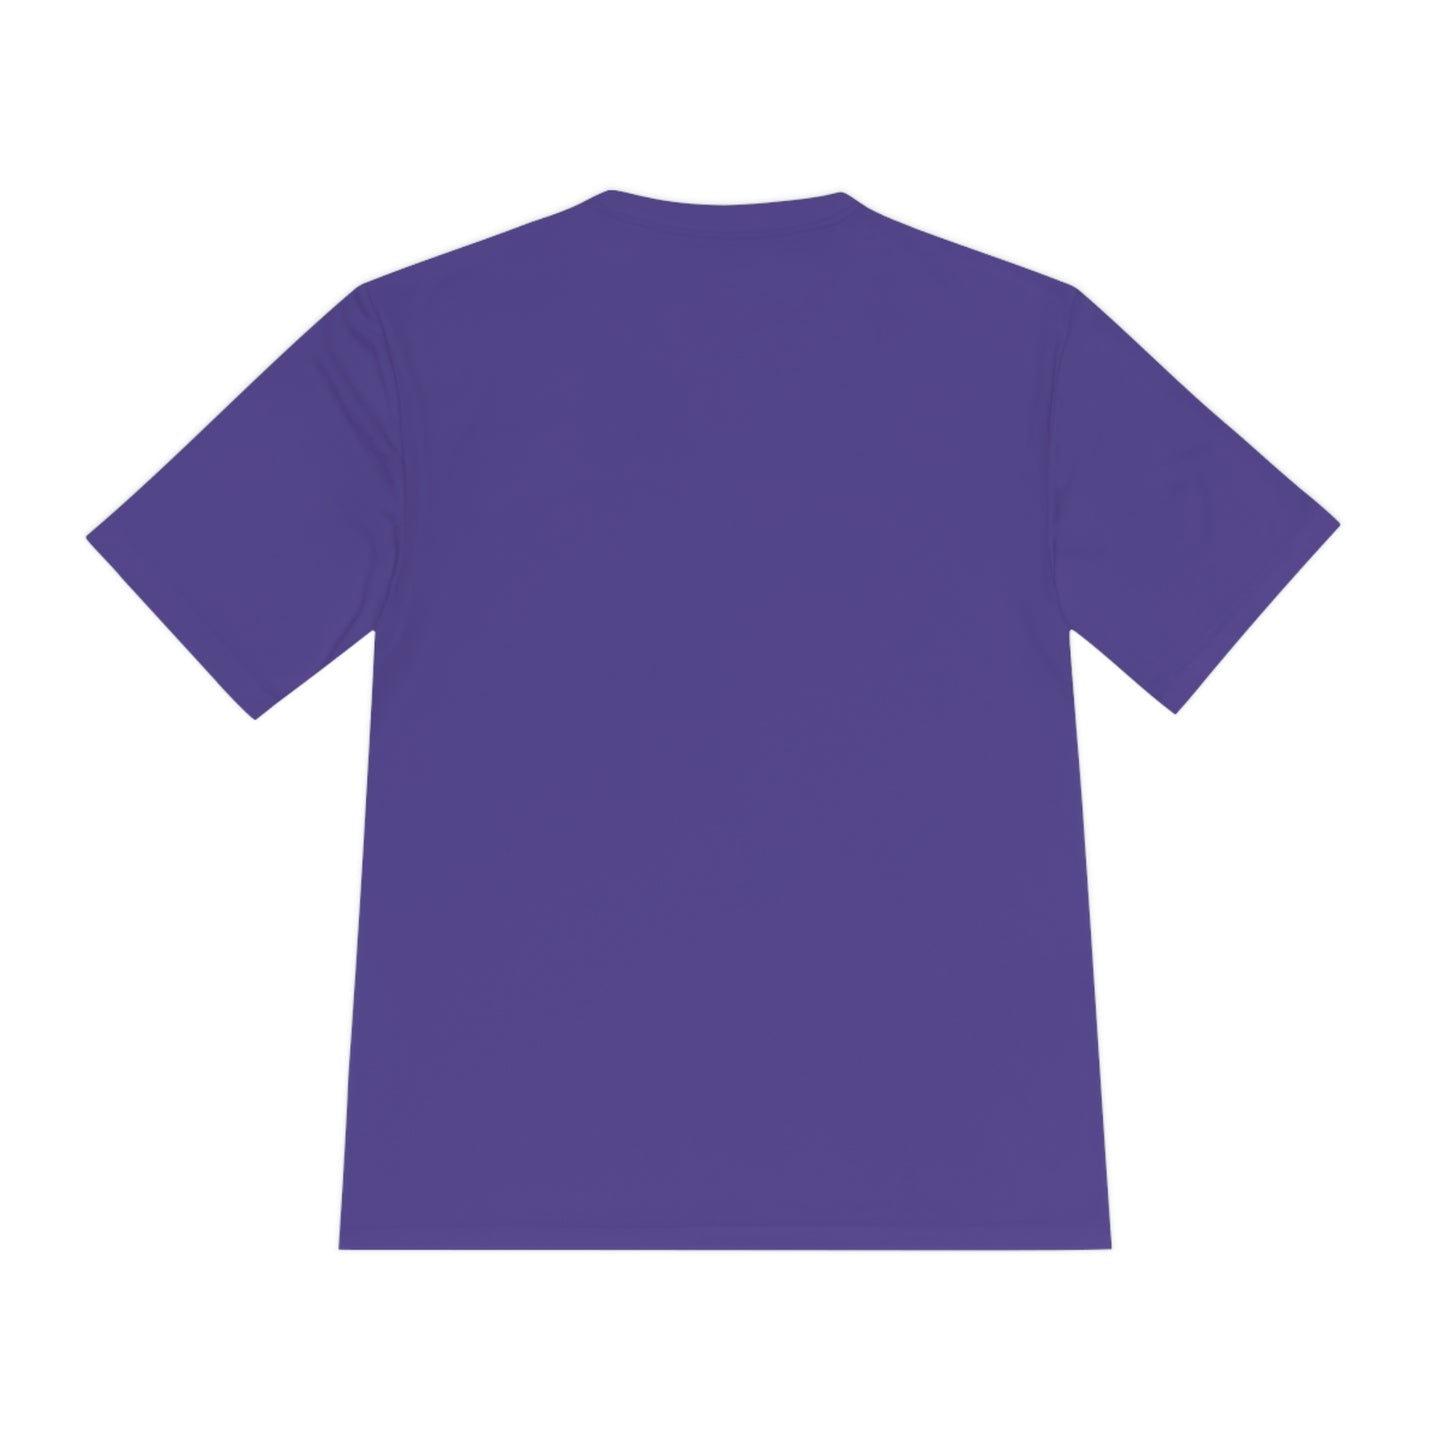 Athletic House Shirt [Adult Sizes]